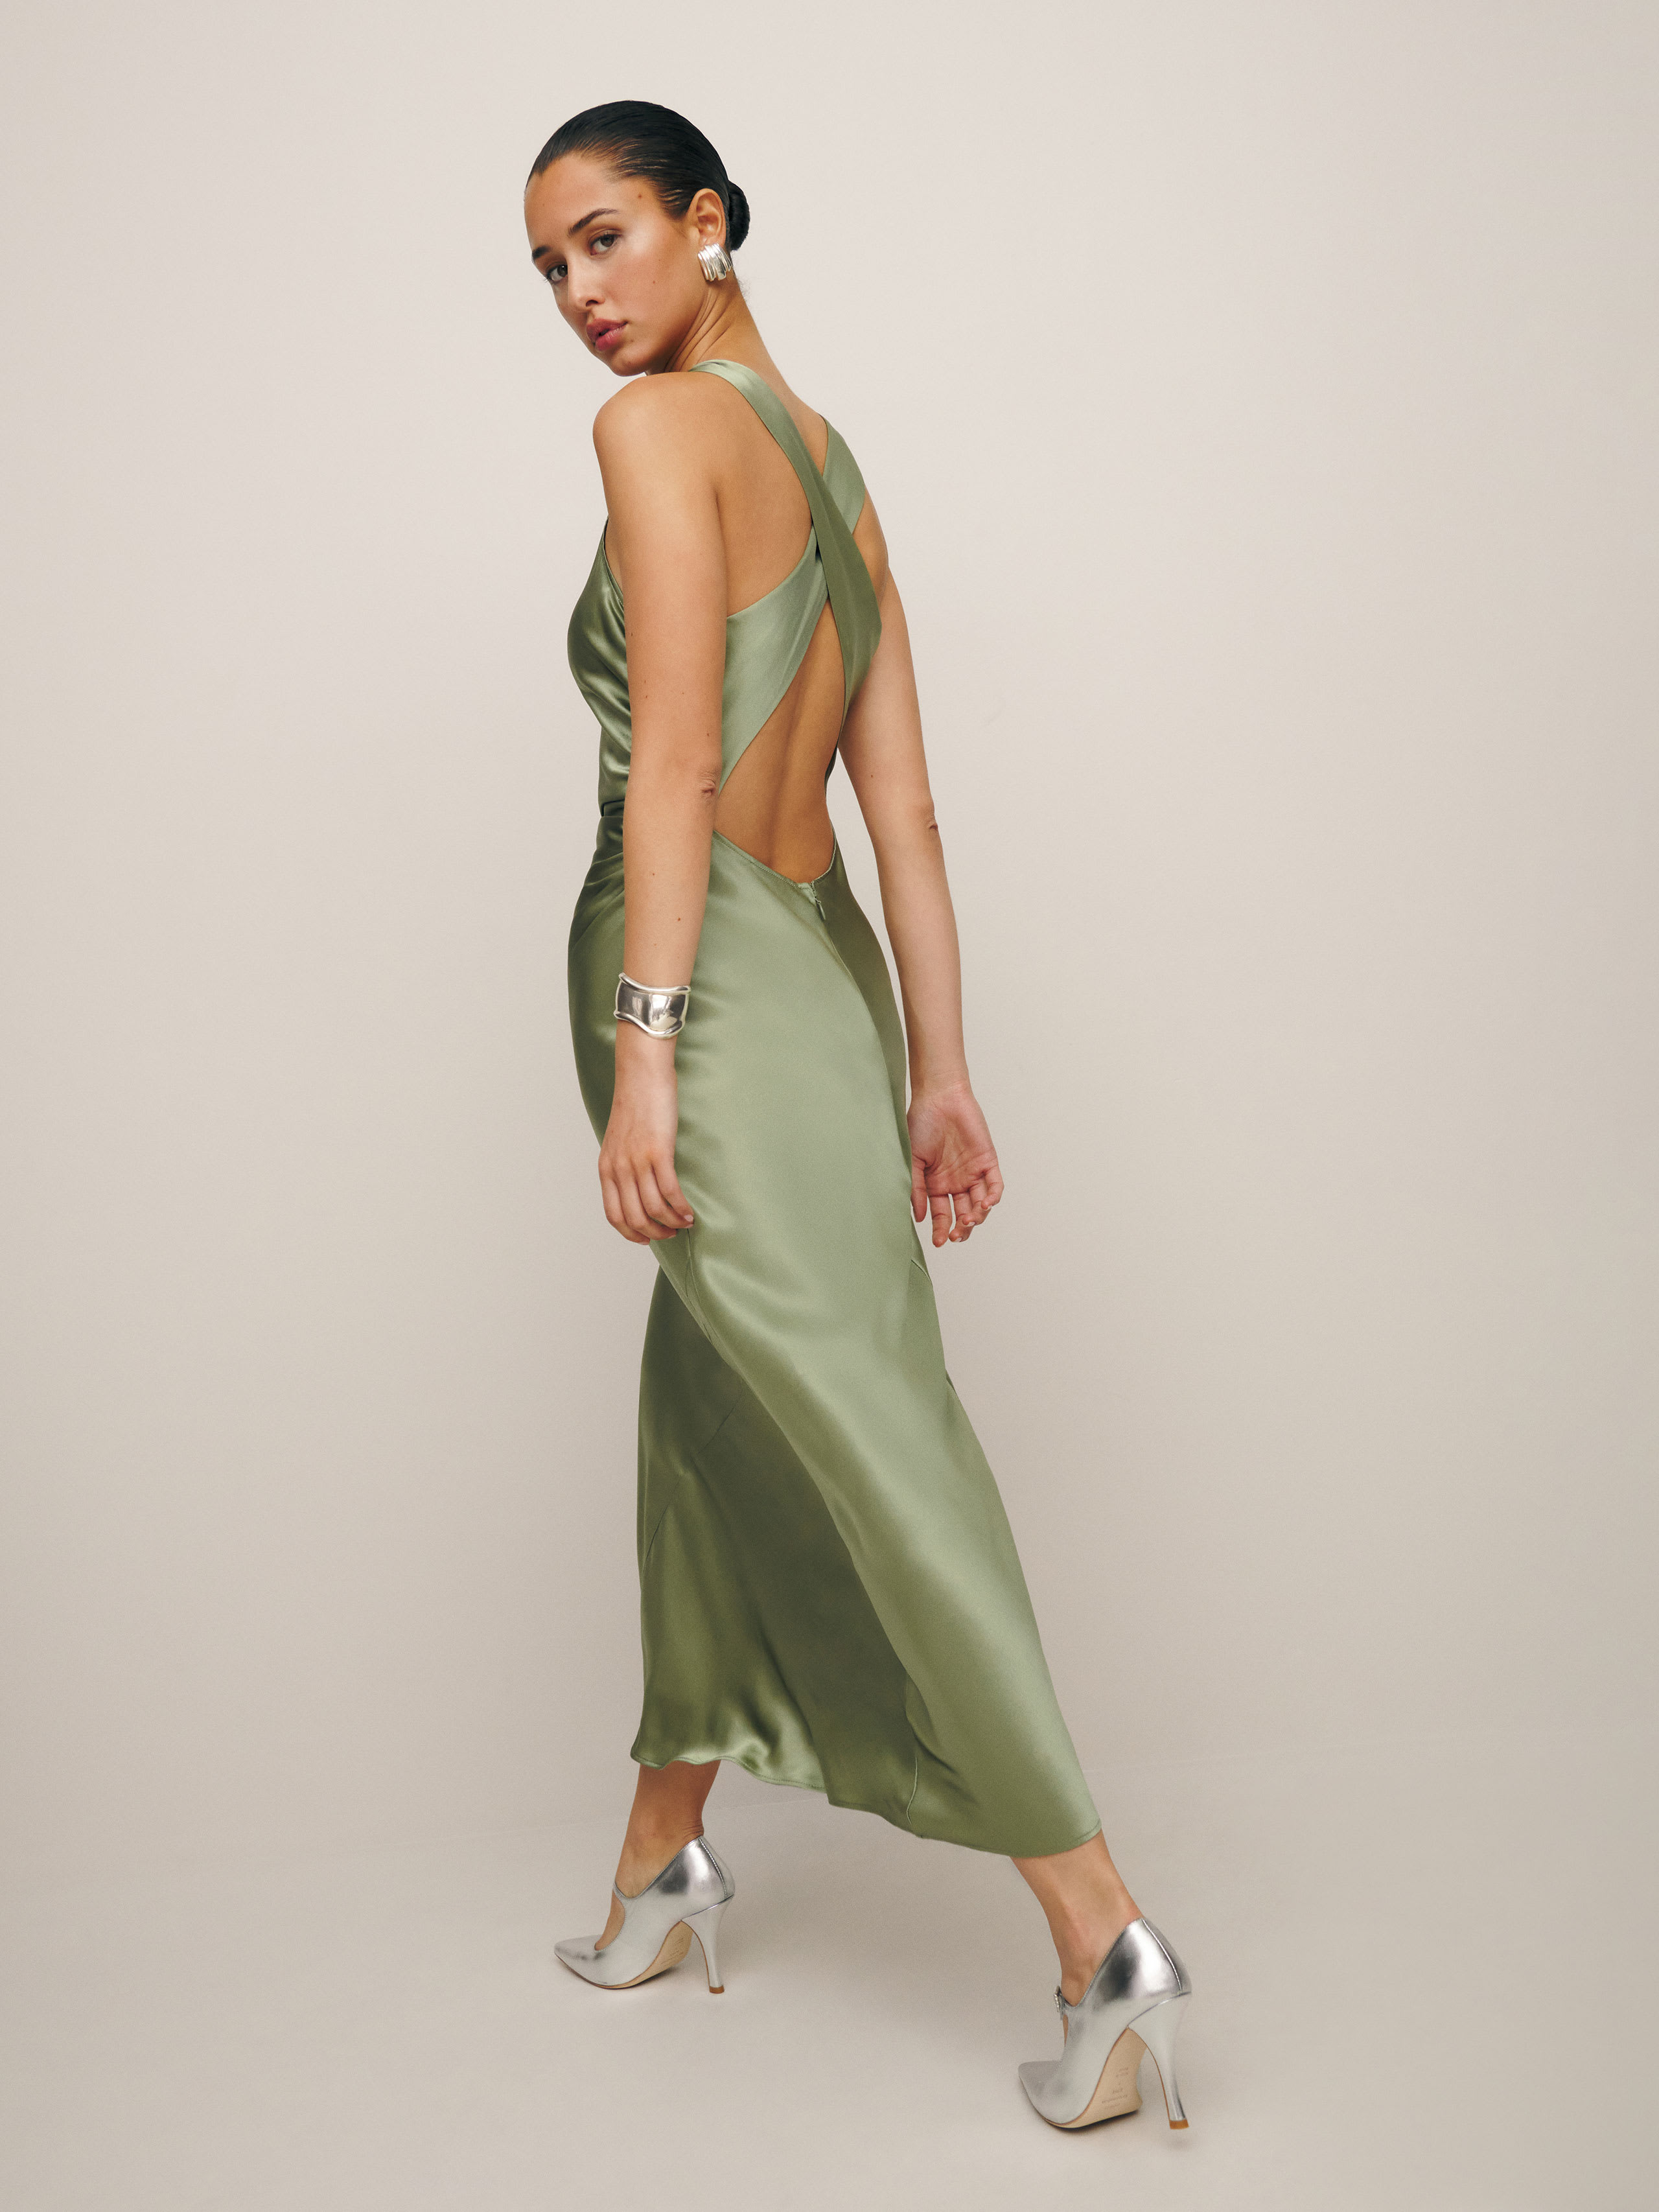 Casette Silk Dress, thumbnail image 1